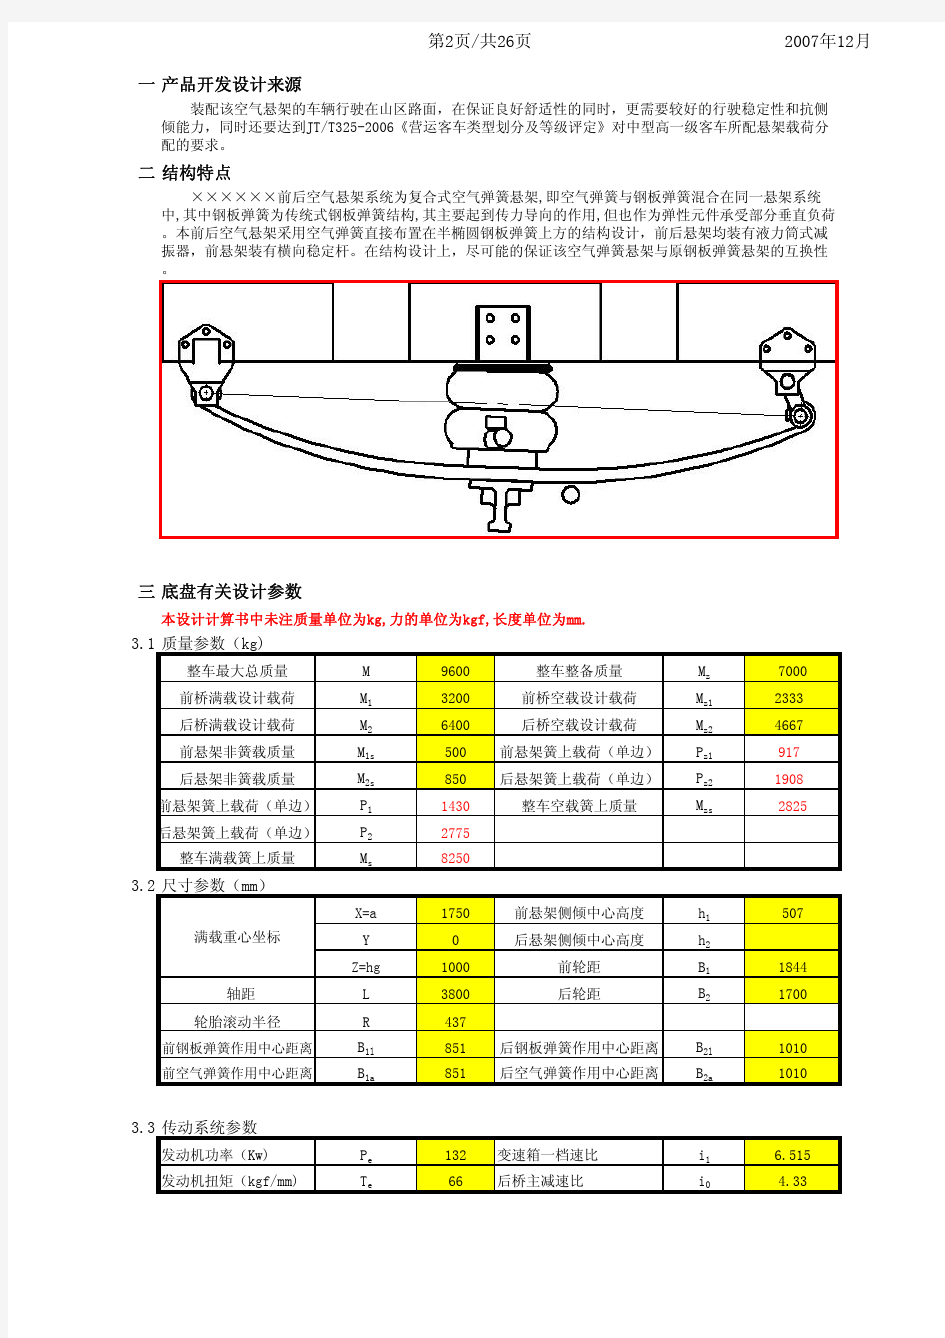 复合式空气悬架设计计算书(121907)